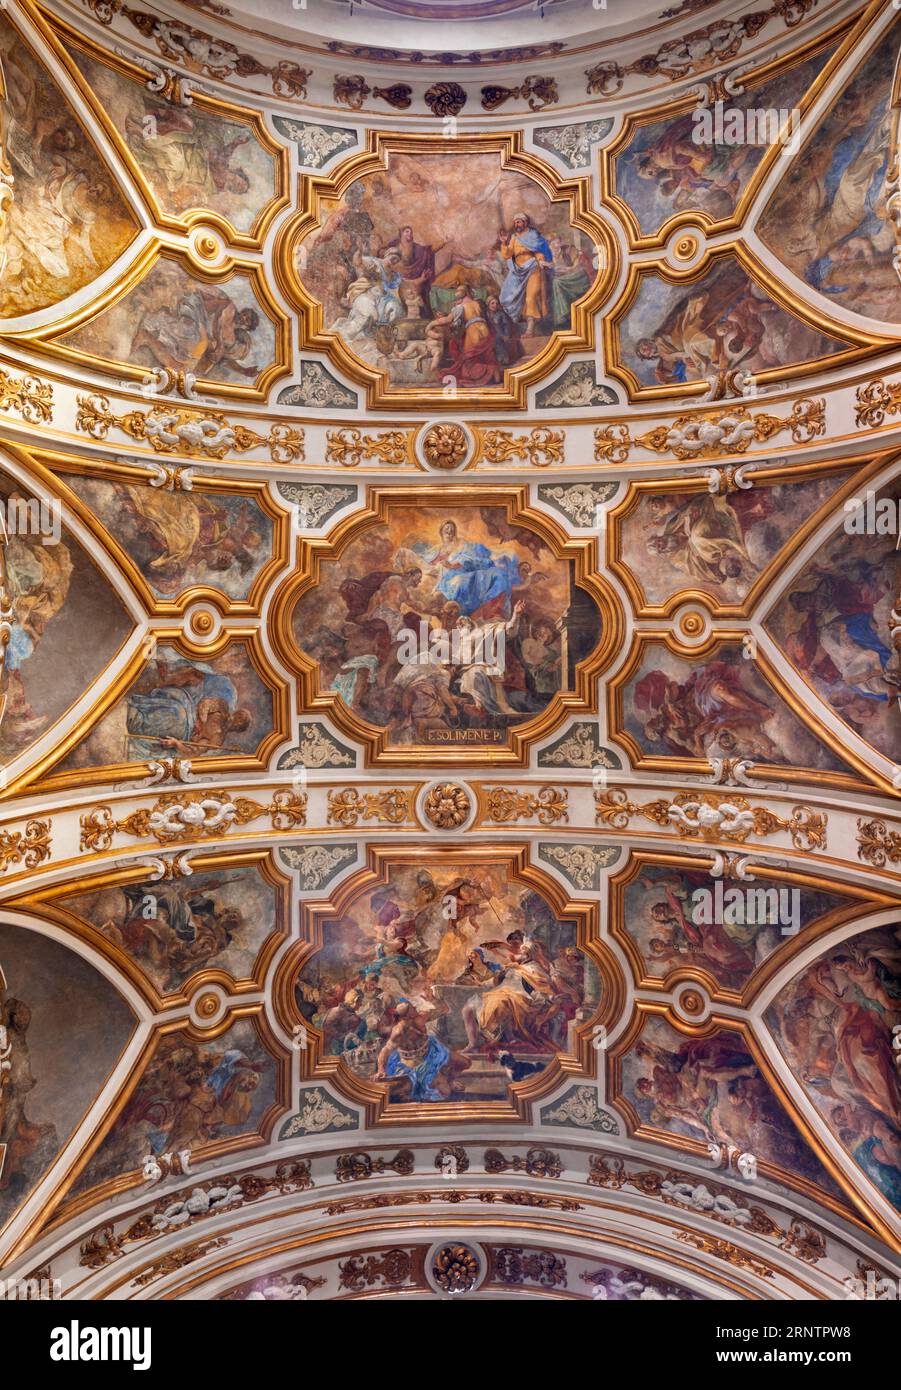 NAPLES, ITALIE - 23 AVRIL 2023 : la fresque du plafond avec des scènes forment la vie de la Saint Nicolas dans l'église Chiesa di San Nicola alla Carita Banque D'Images